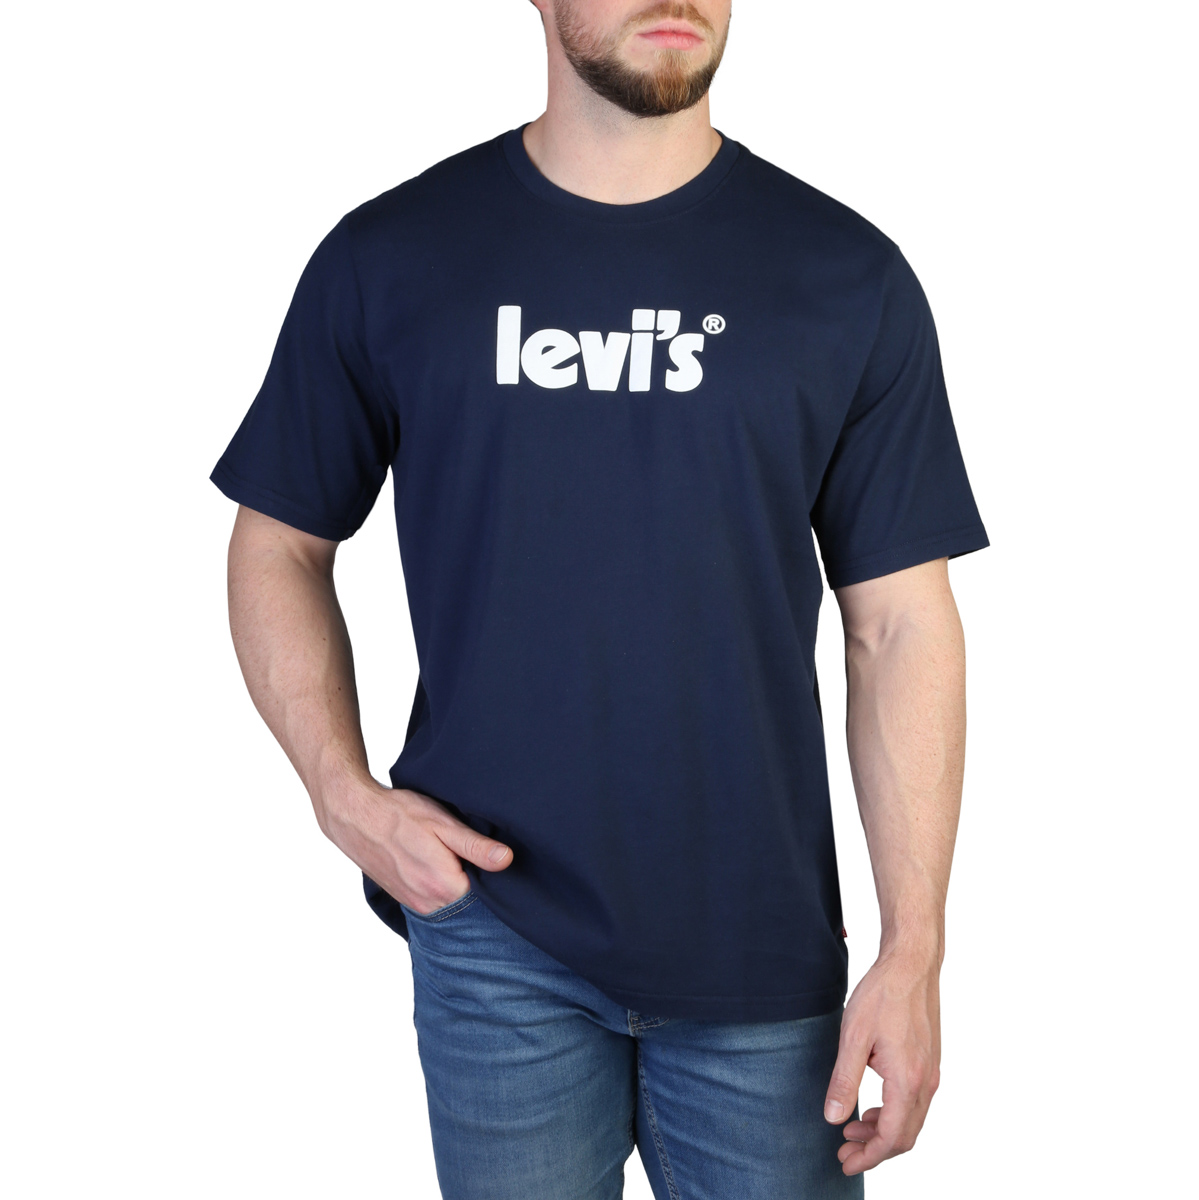 Levis - T-shirt homme